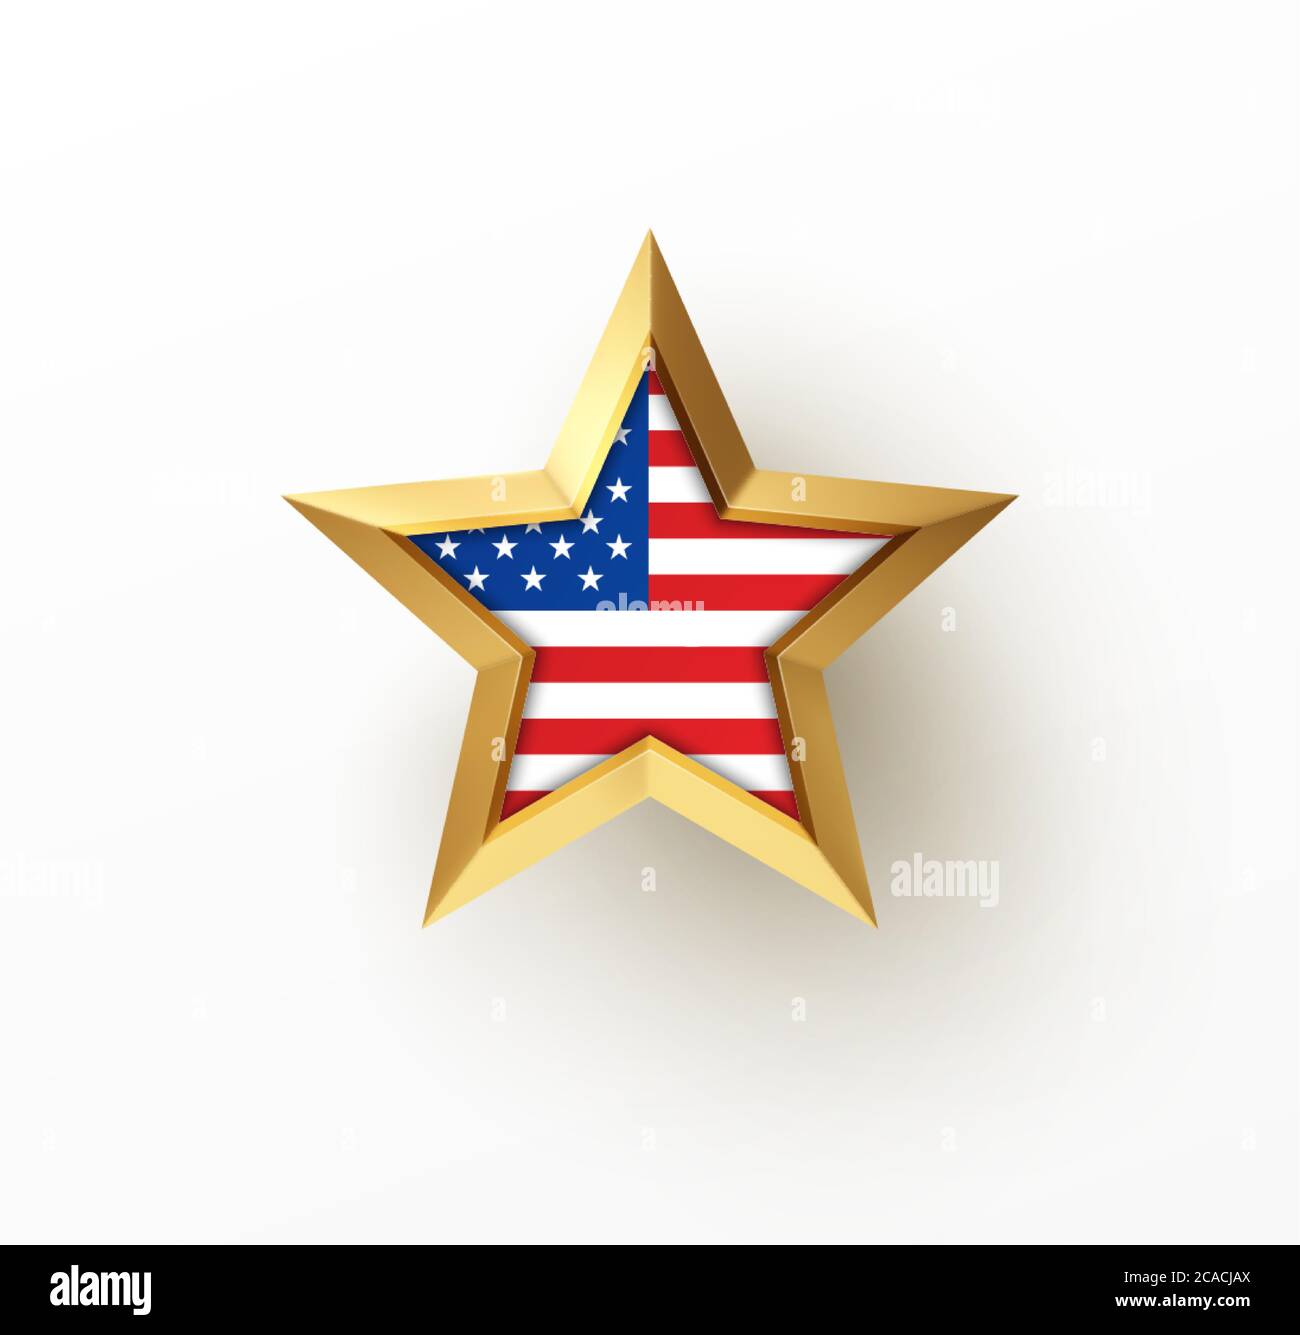 Golden realistischer 3d-Stern mit amerikanischer Flagge isoliert auf weißem Hintergrund. Gestaltungselement für patriotische amerikanische Plakate, Karten. Vektorgrafik Stock Vektor